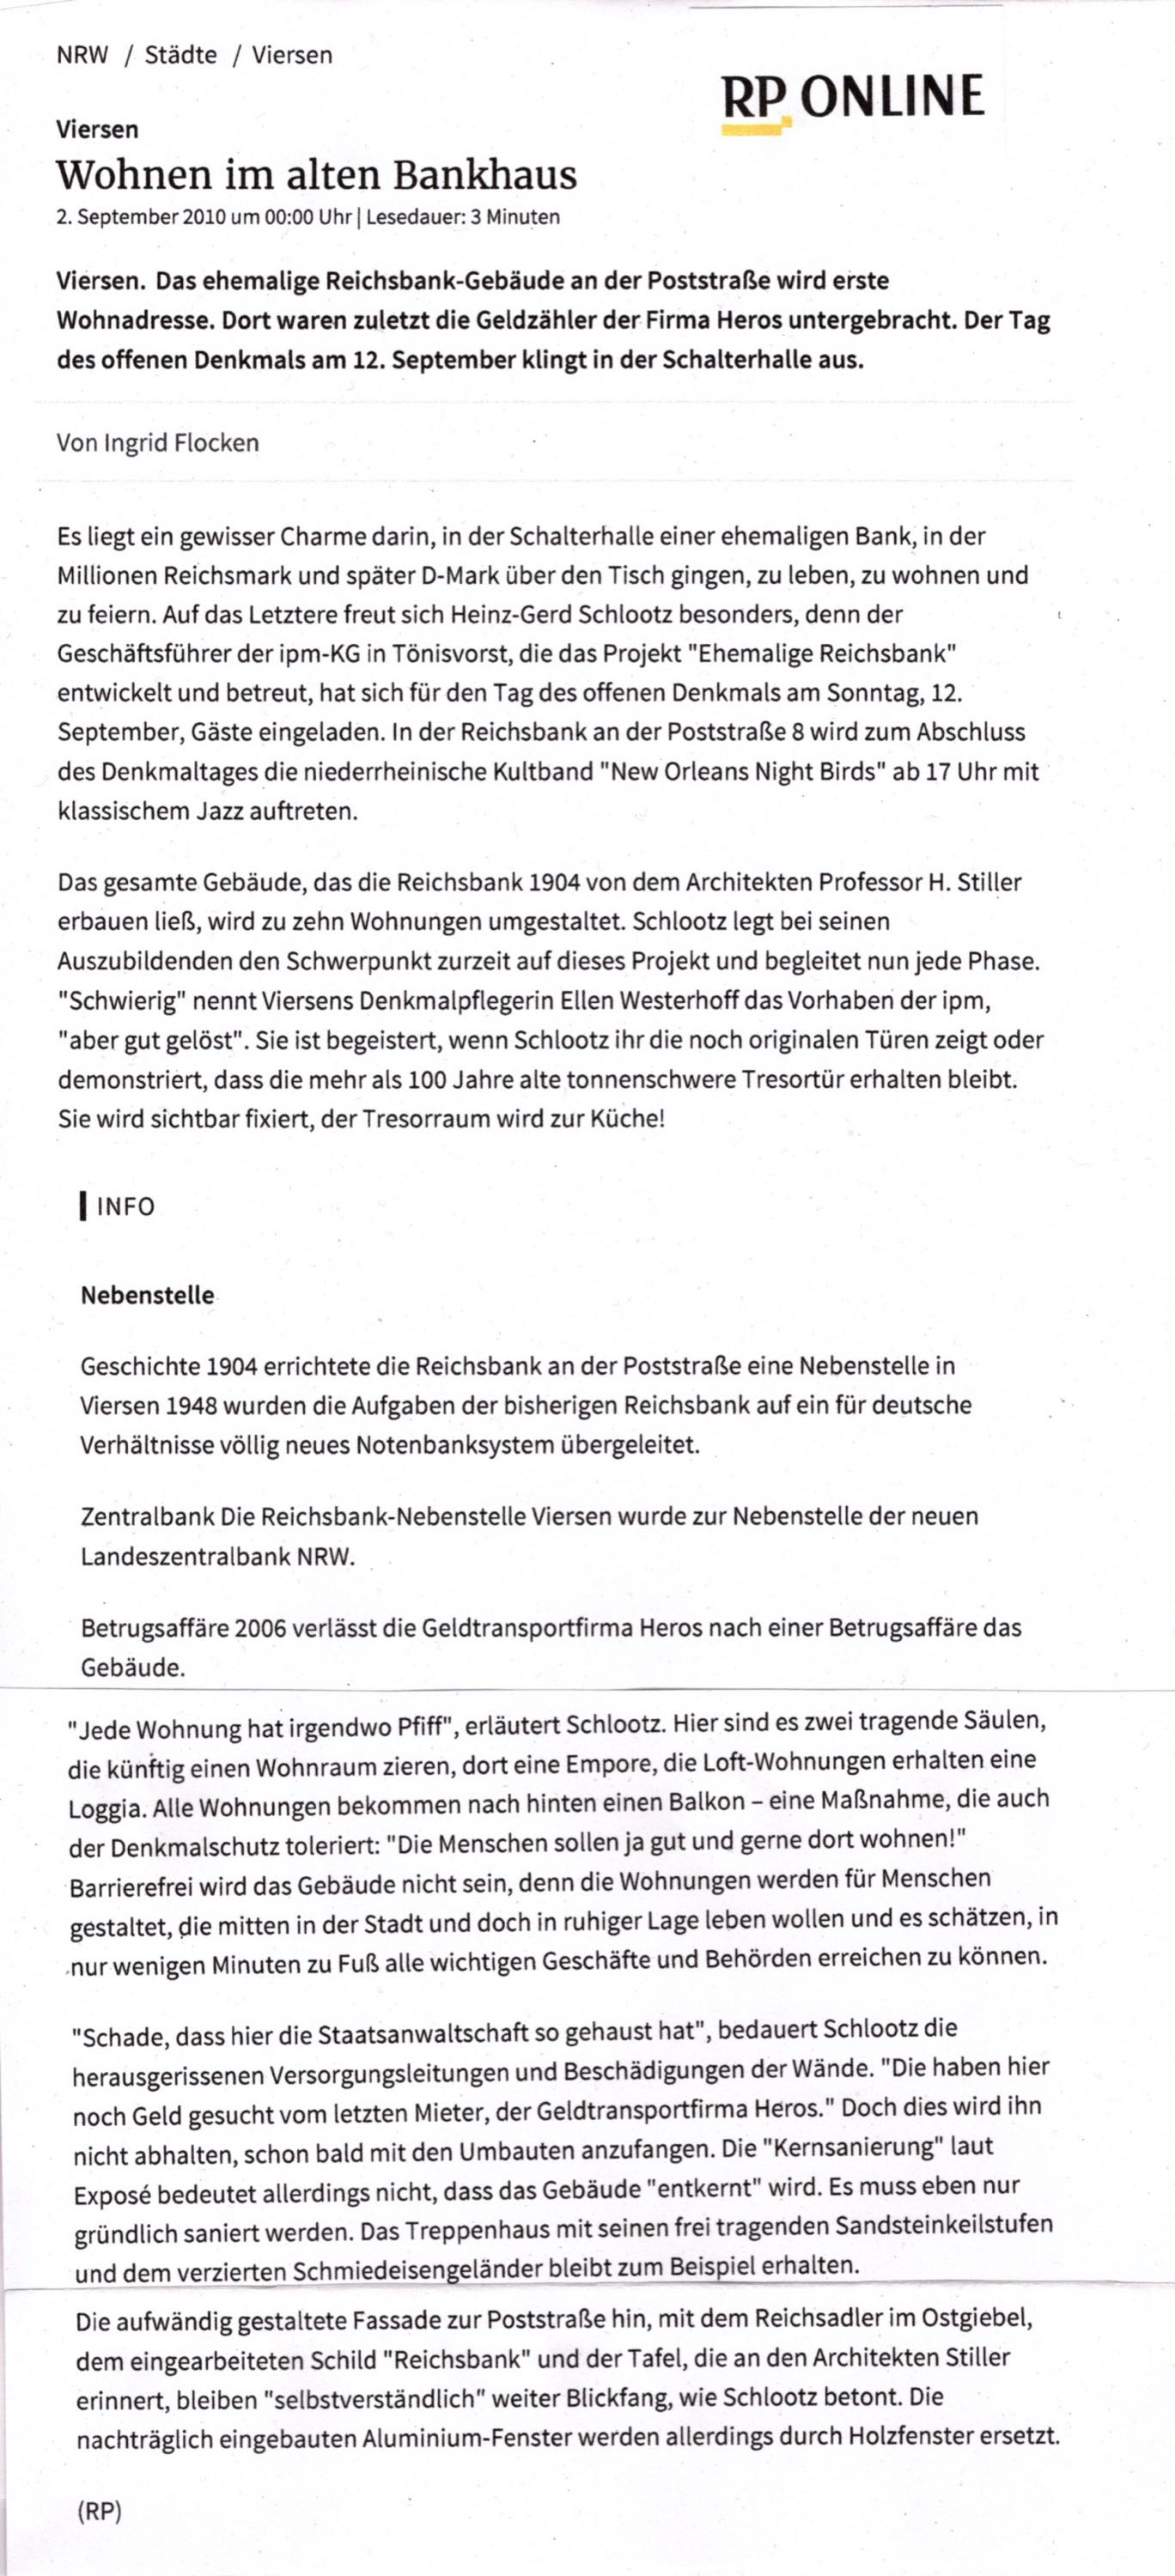 RP-Online-Artikel zur Reichsbank- 2.09.2010